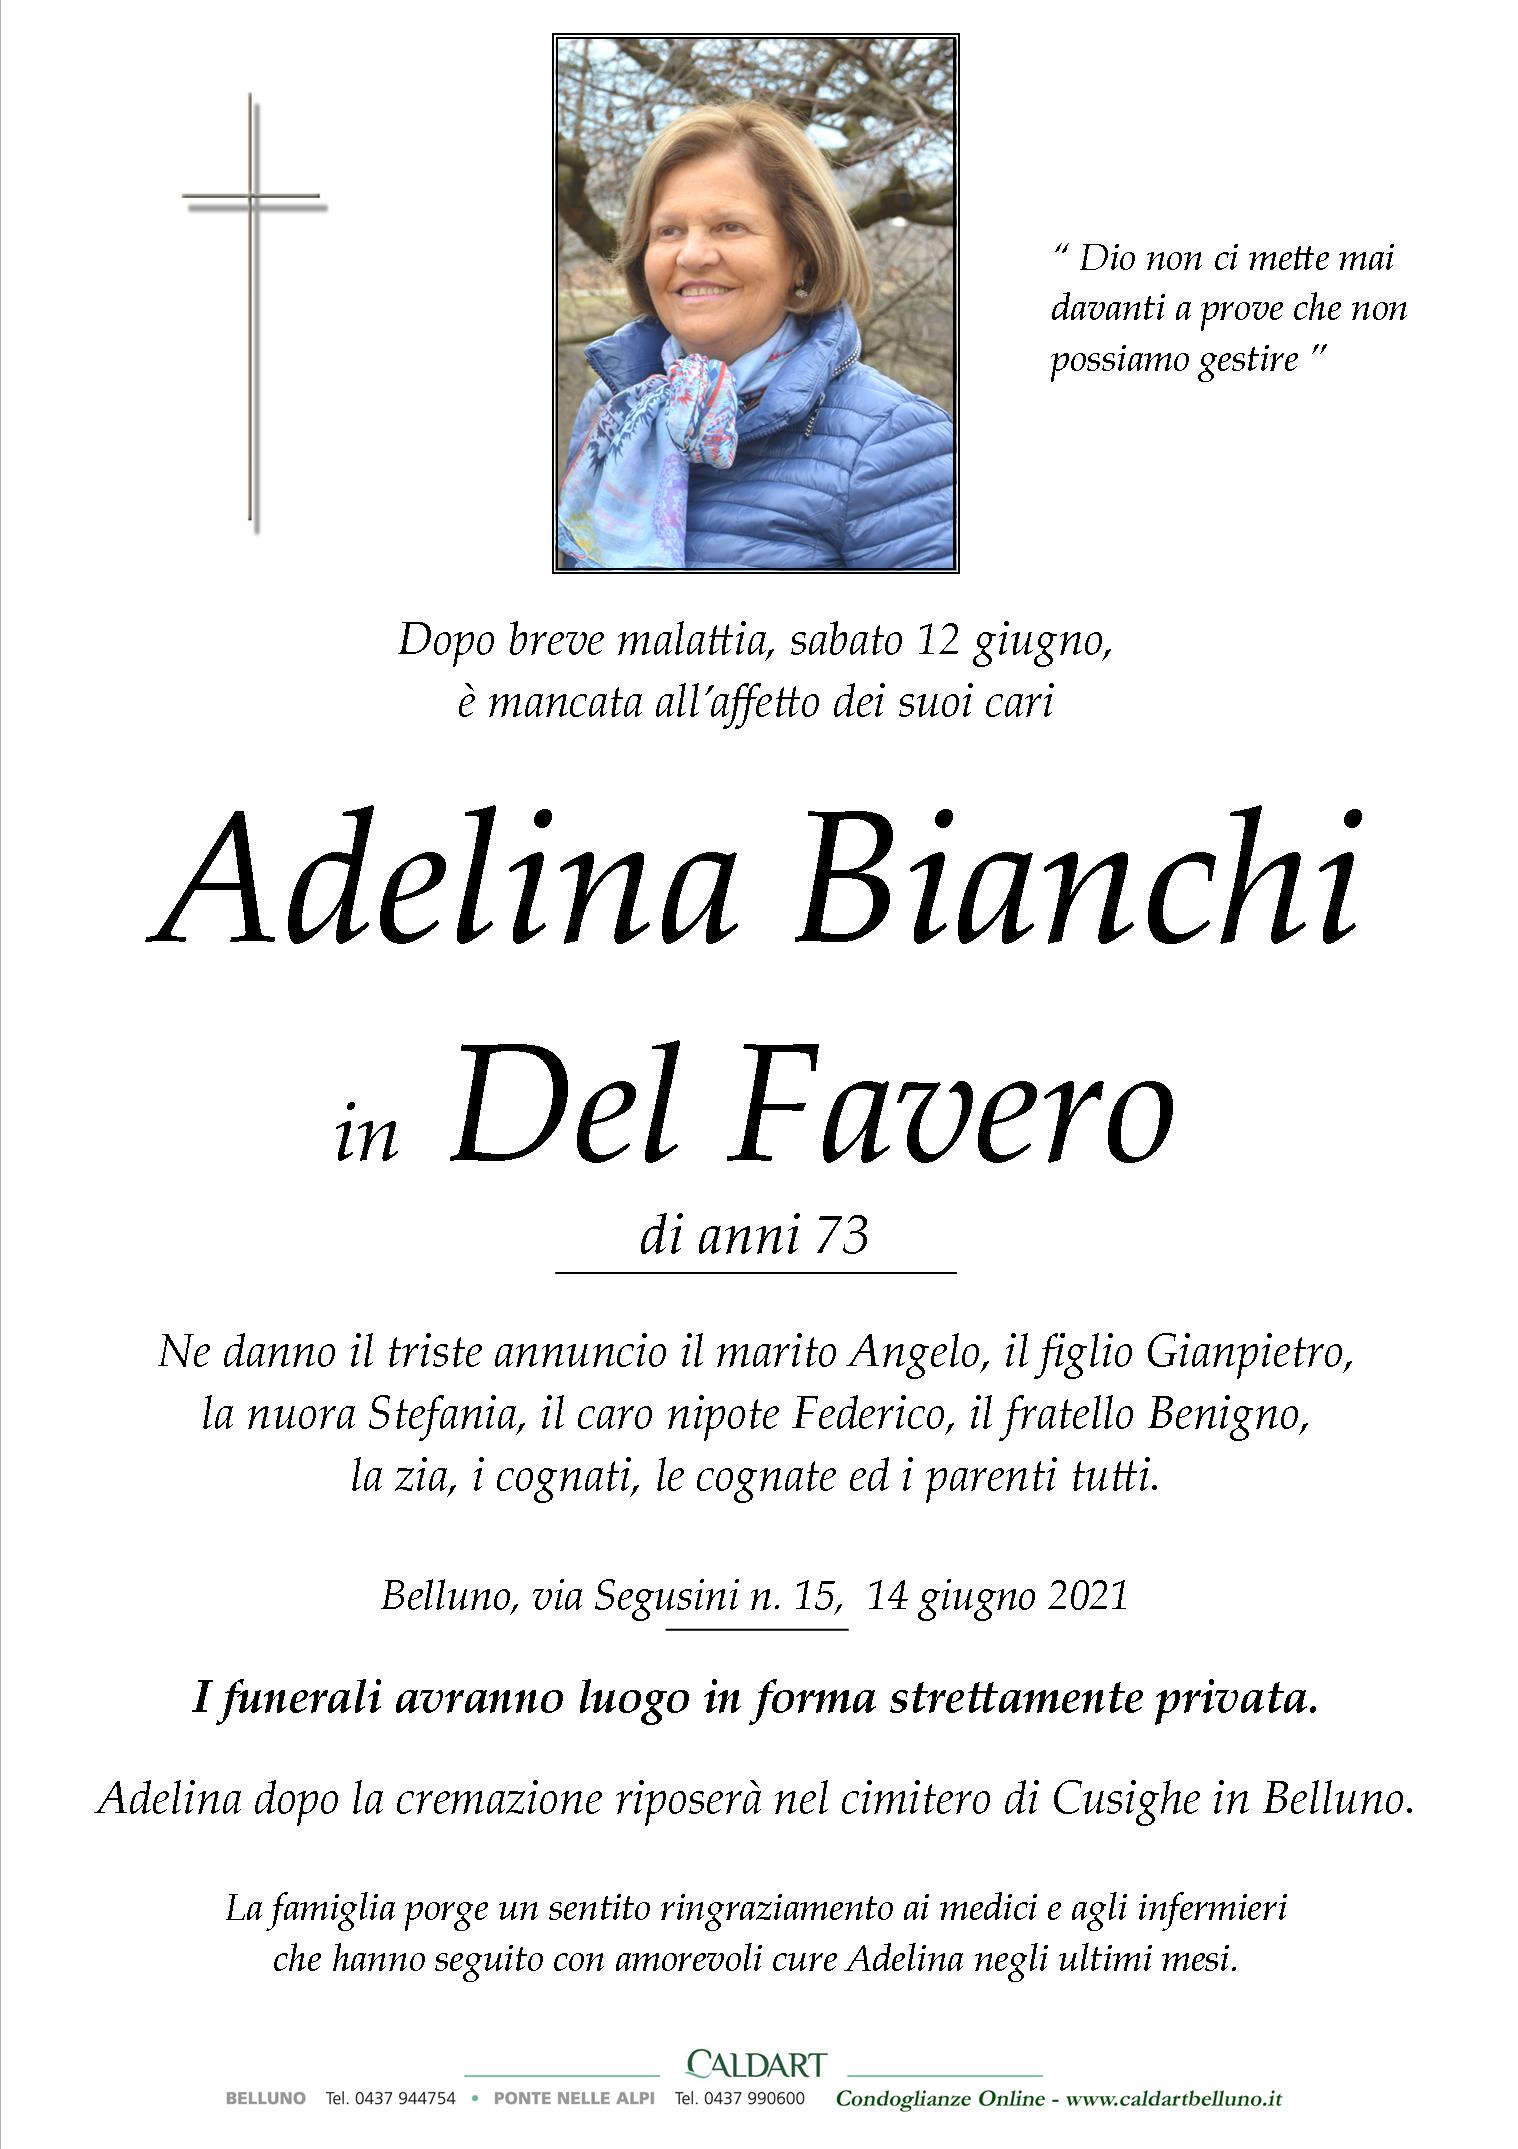 Bianchi Adelina